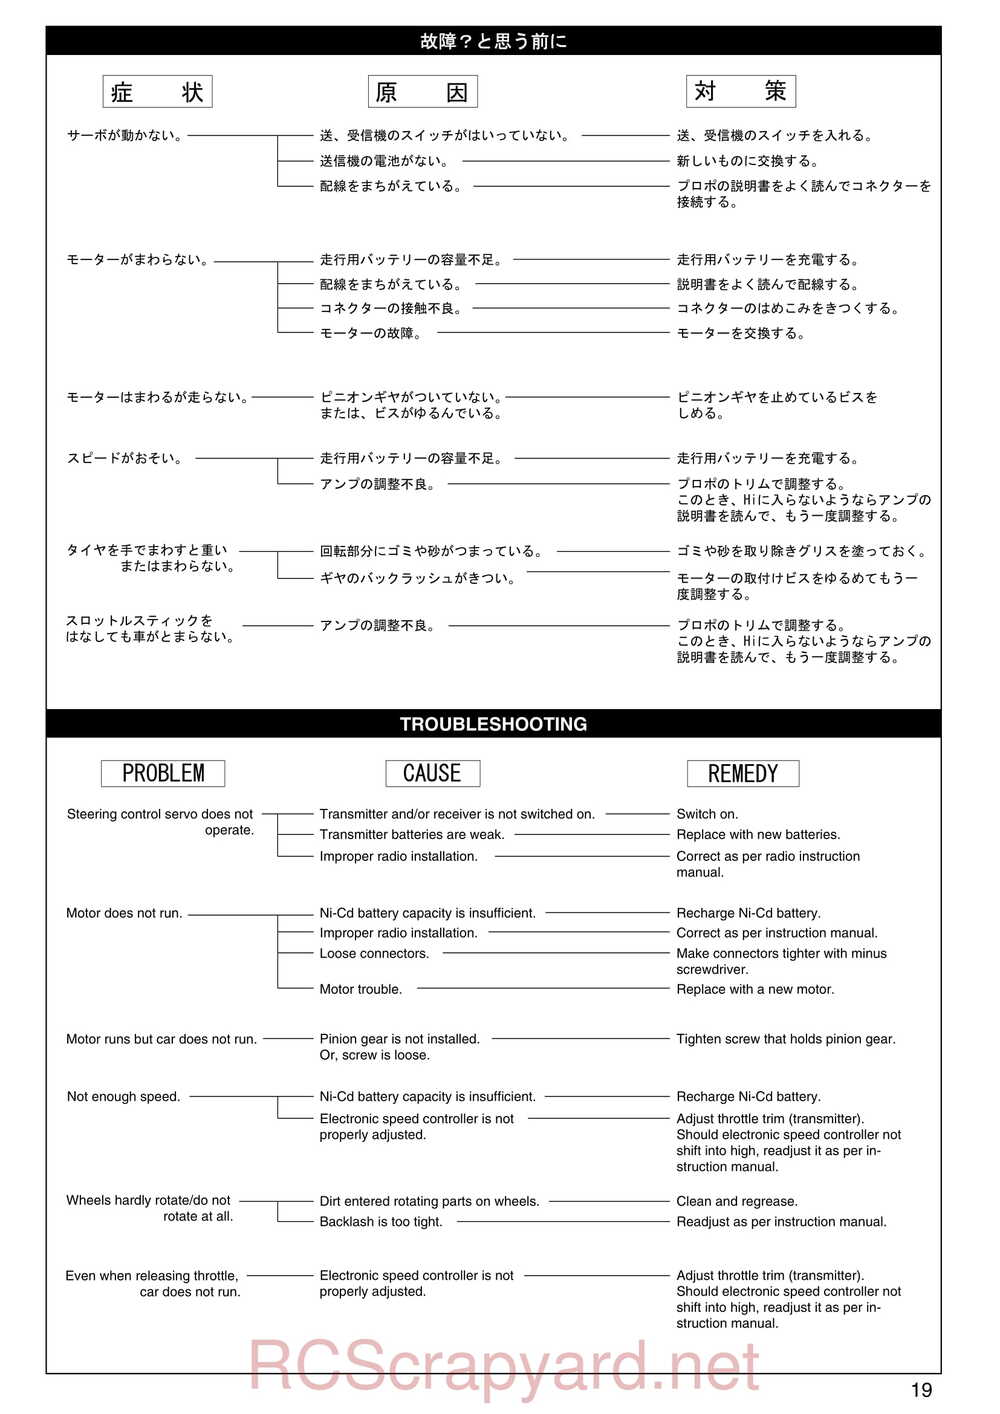 Kyosho - 30075 - Lazer-ZX-S-Evo - Manual - Page 19